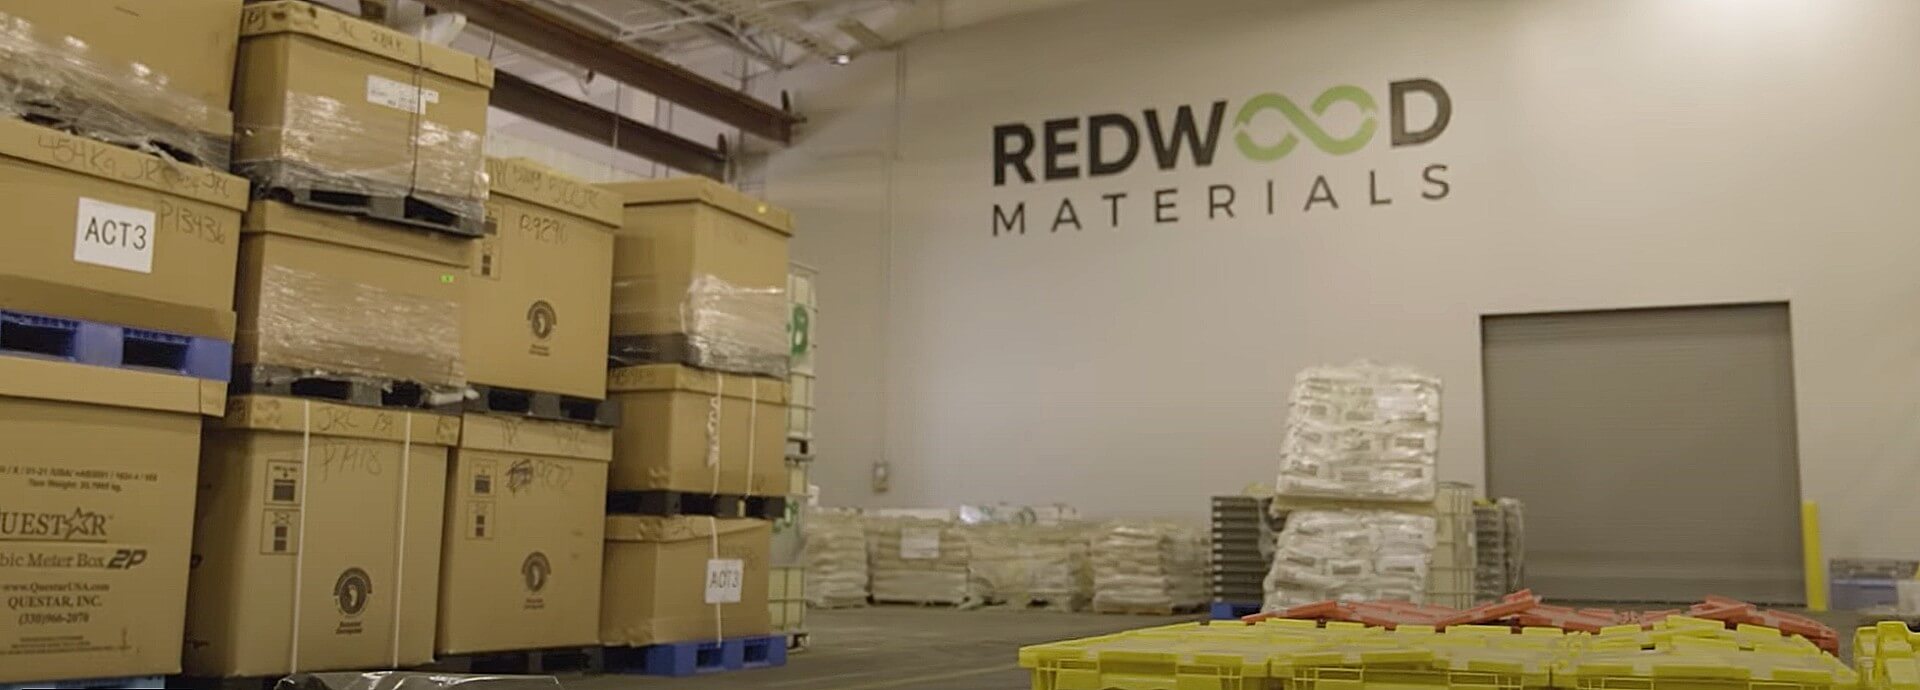 Redwood Materials, vergi teşviklerinde 100 milyon doların üzerinde onay aldı